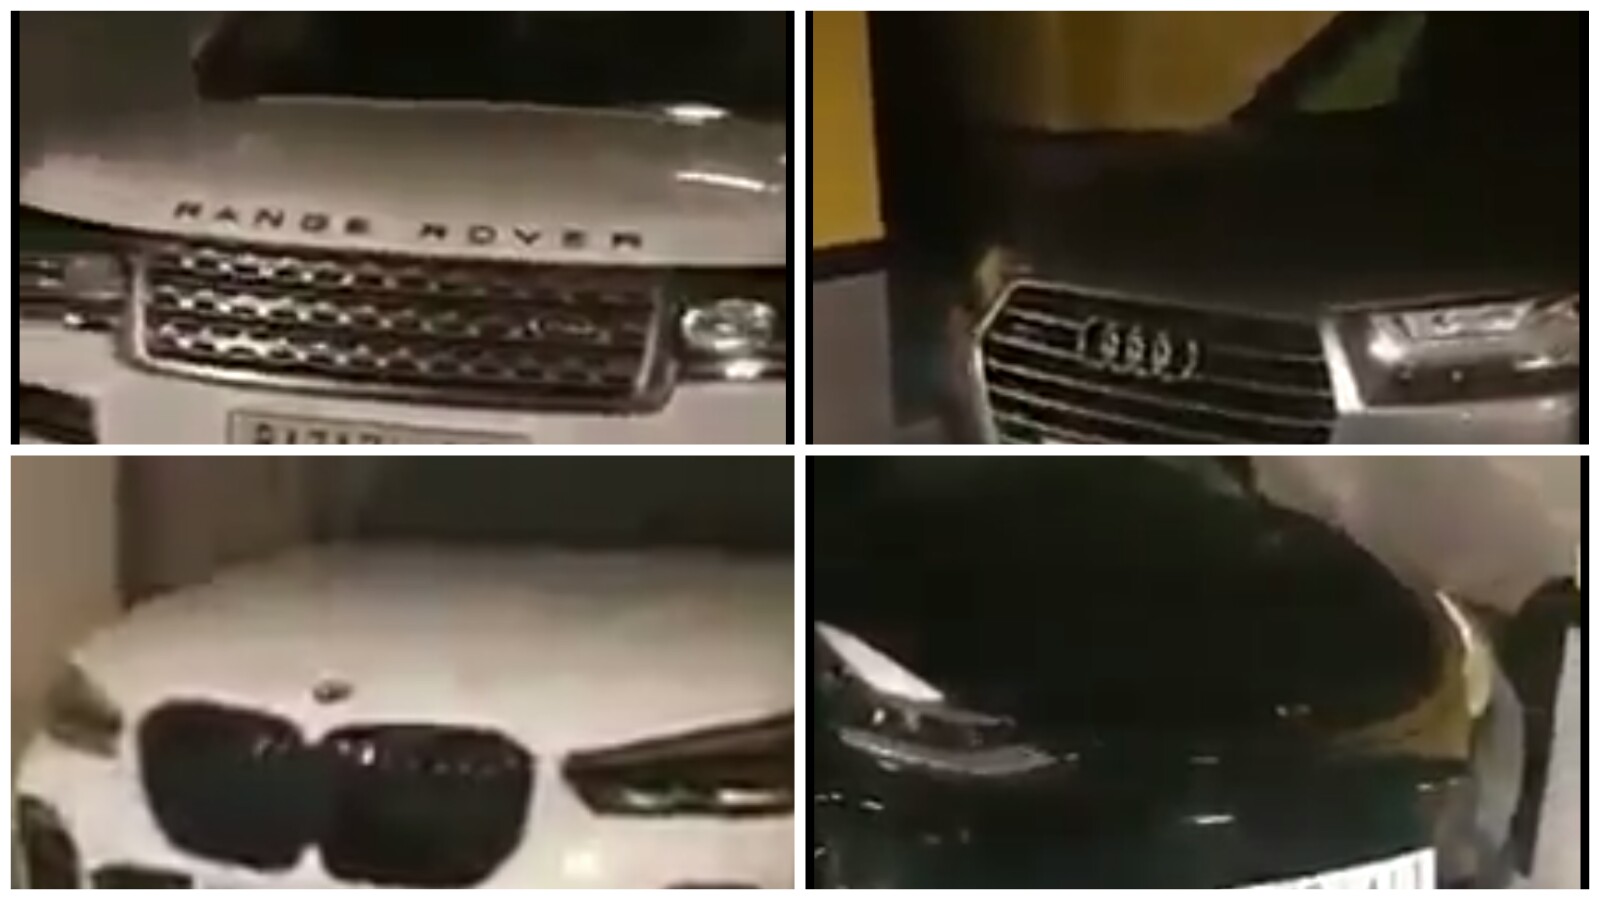 بالفيديو… شاهد مهاجر مغربي يكشف عن الثروة المغربية بإسبانيا ويصور سيارات فارهة مرقمة بالمغرب في مدينة “ماربيا”